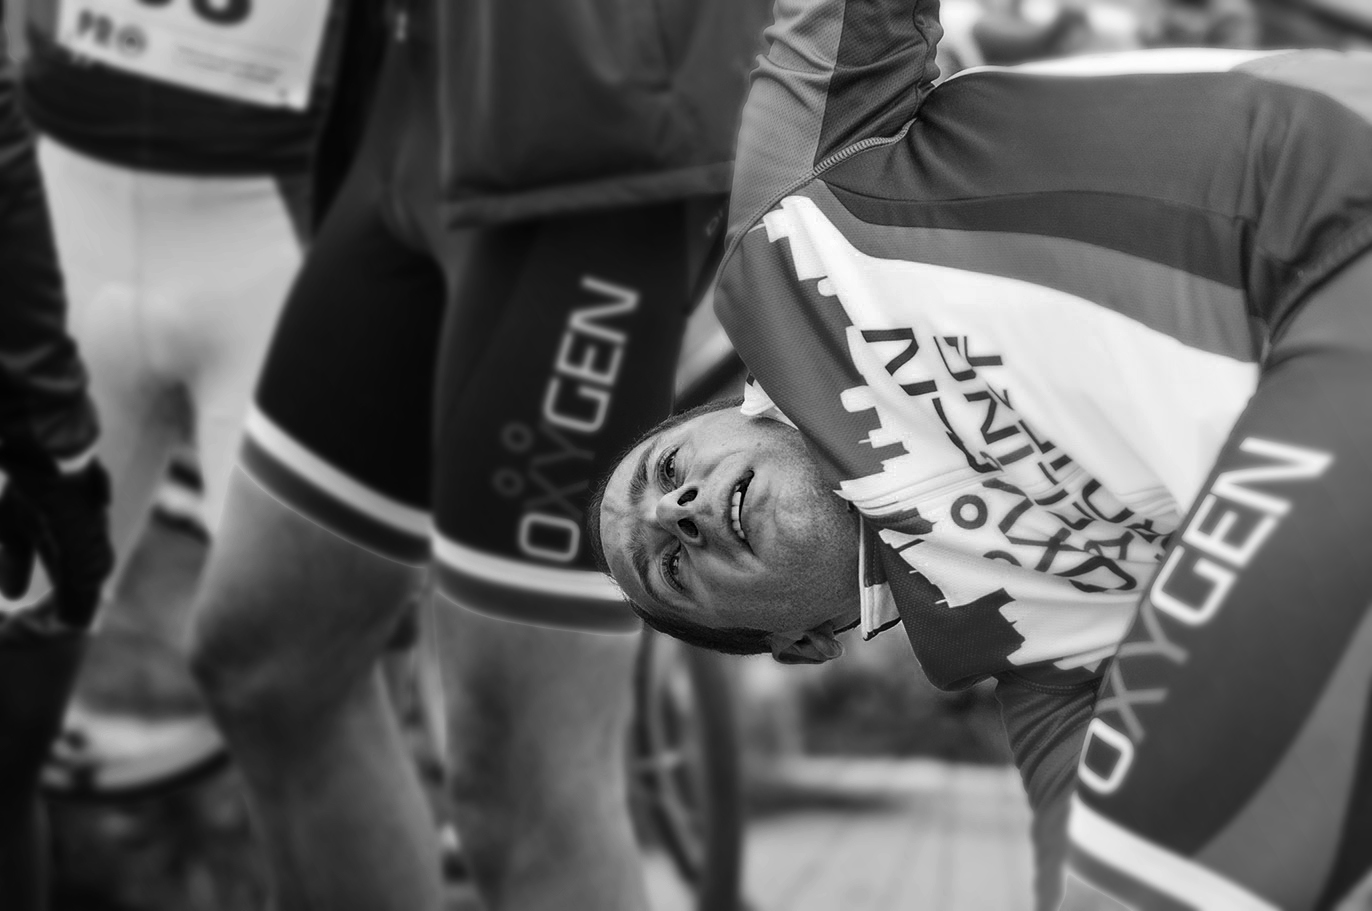 OXYGEN-sekcja-biegowa-rowerowa-indoor-cycling-running-trening-zawoy-Makow-Mazowiecki-2015-duathlon-wyscik-wygrana-zwyciestwo-MILUNA-Ewa-Milun-Walczak-2